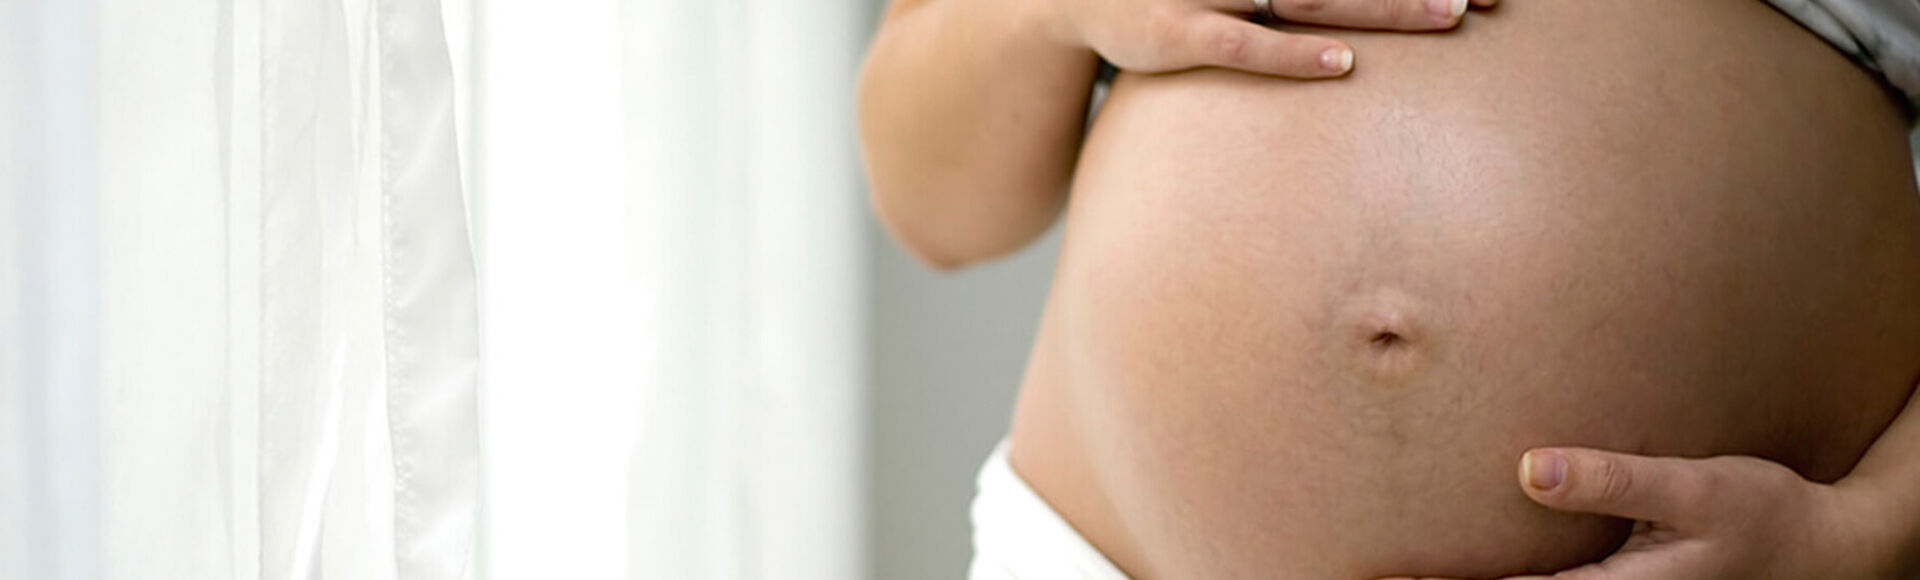 Consequências do herpes genital em sua gravidez